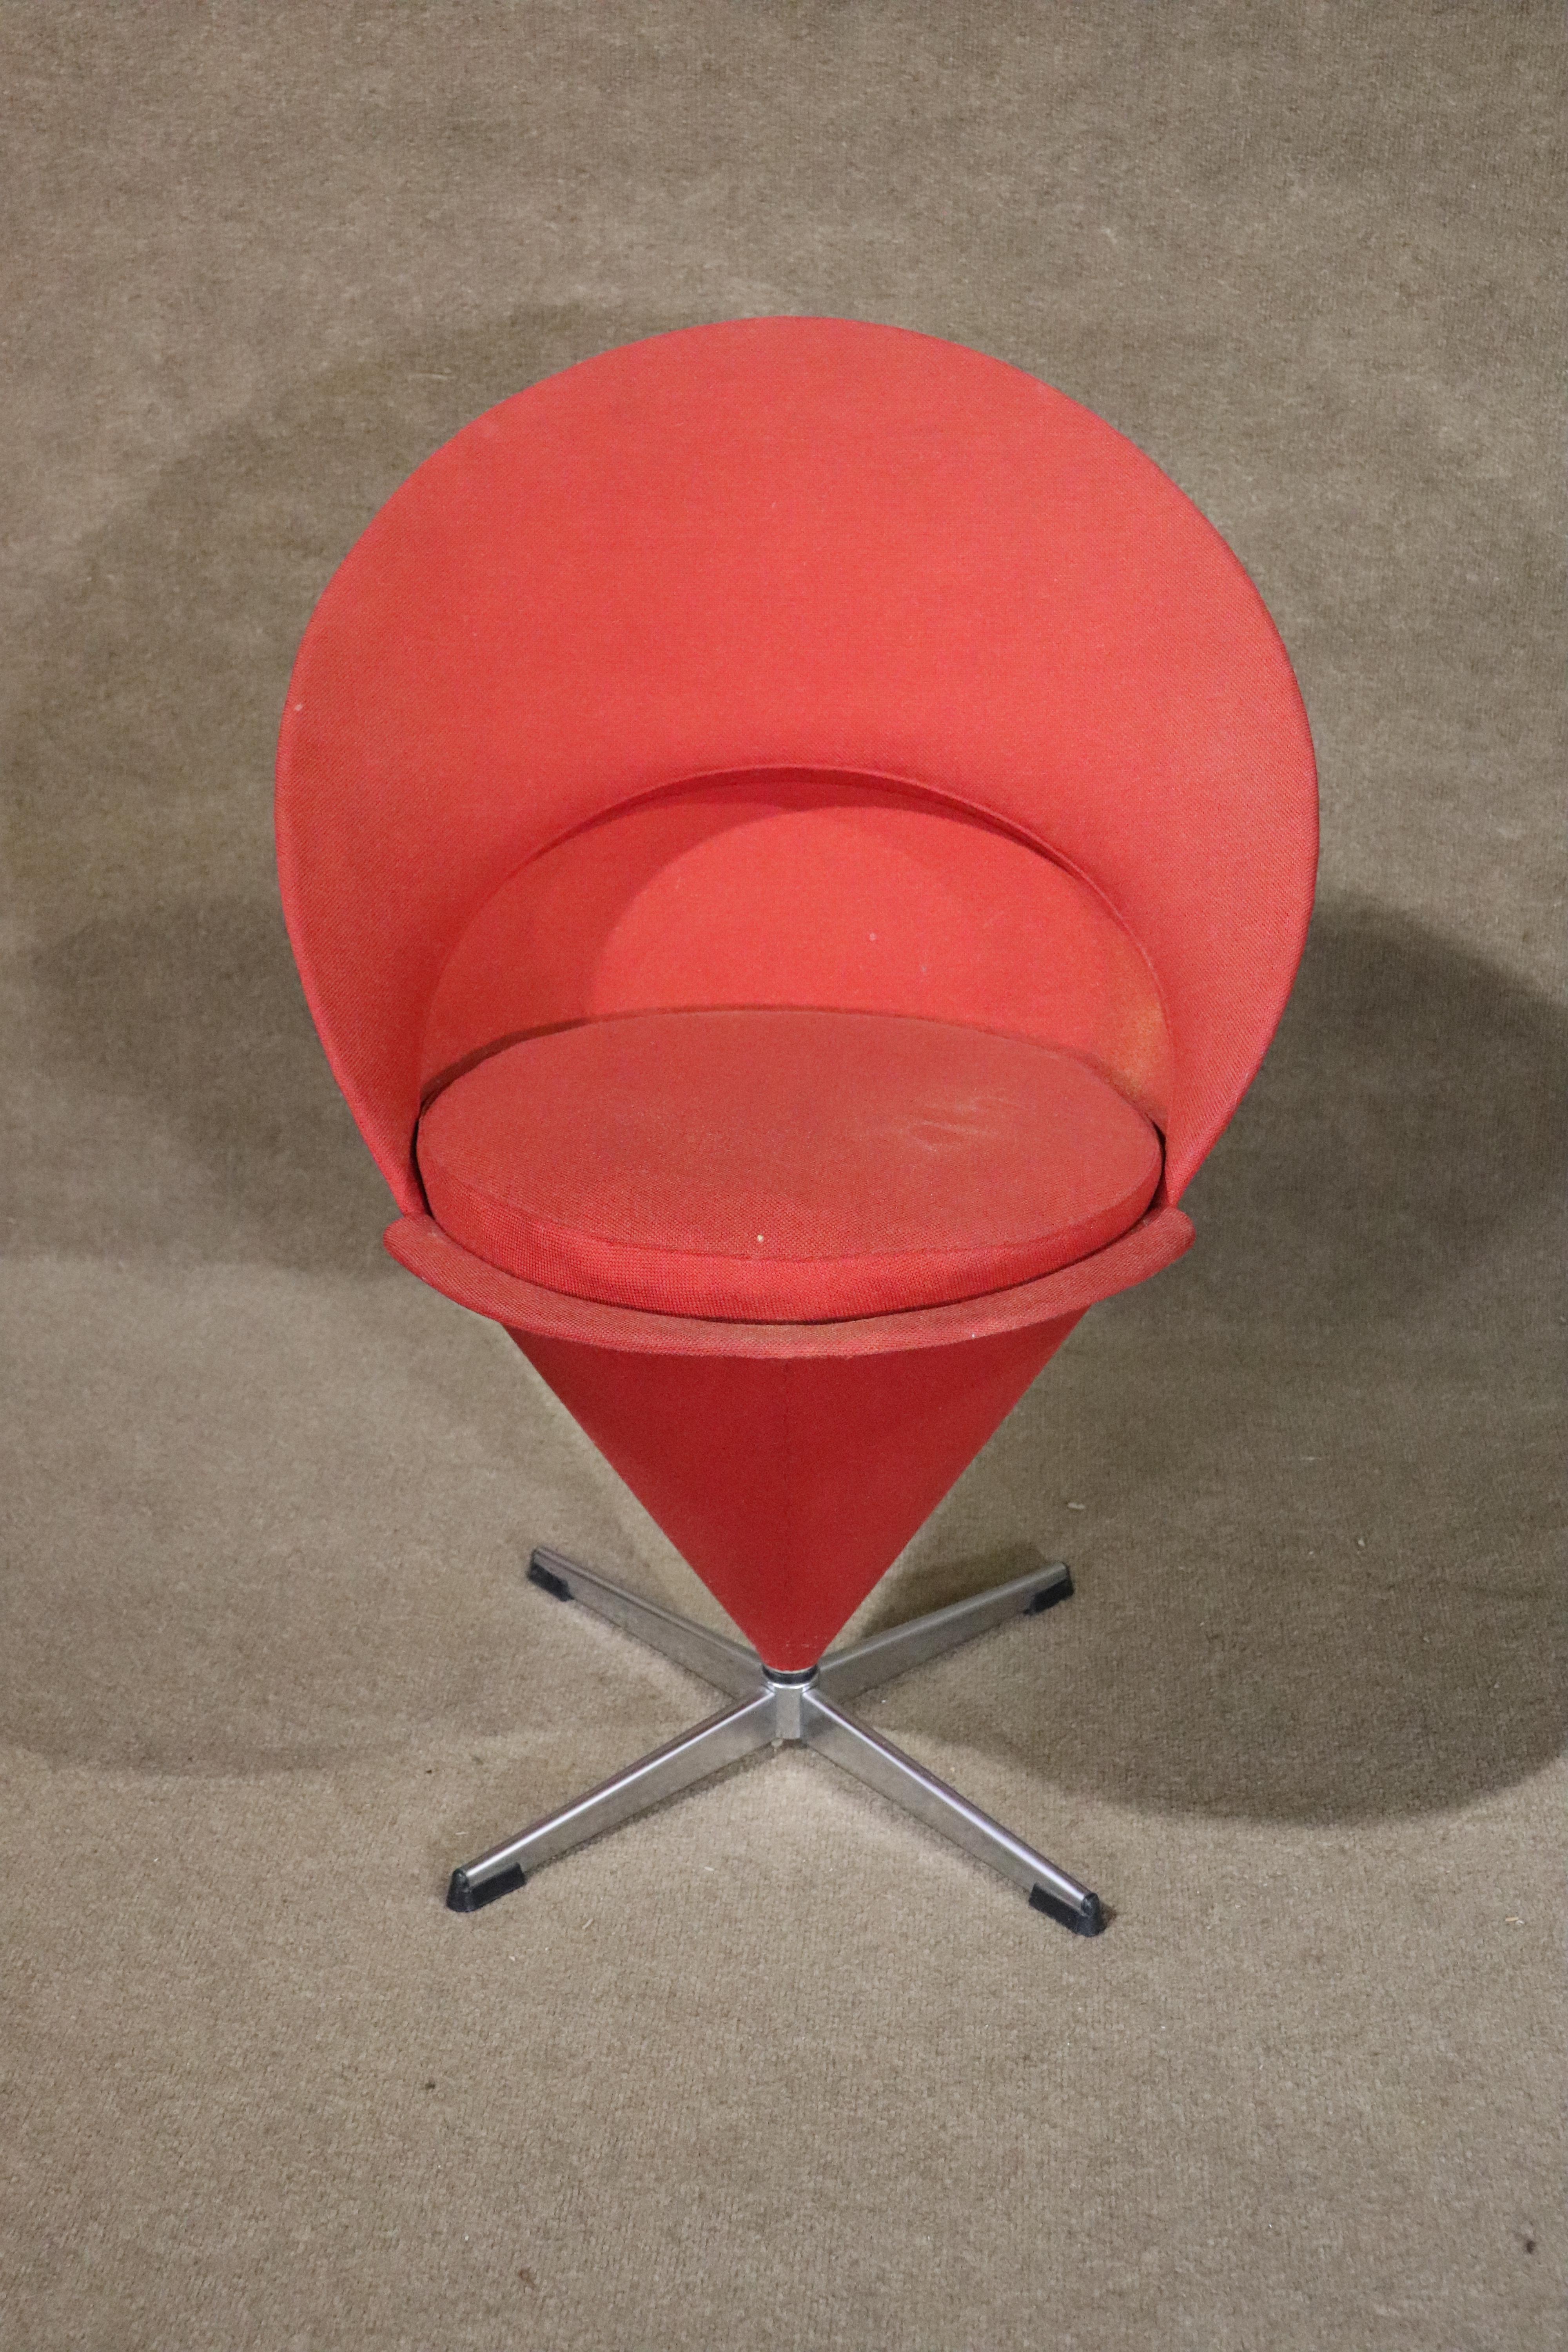 Cette chaise moderne du milieu du siècle est un classique ! Conçu par Verner Panton en 1958, il a repoussé les limites de la conception moderne des sièges.
Veuillez confirmer le lieu NY ou NJ